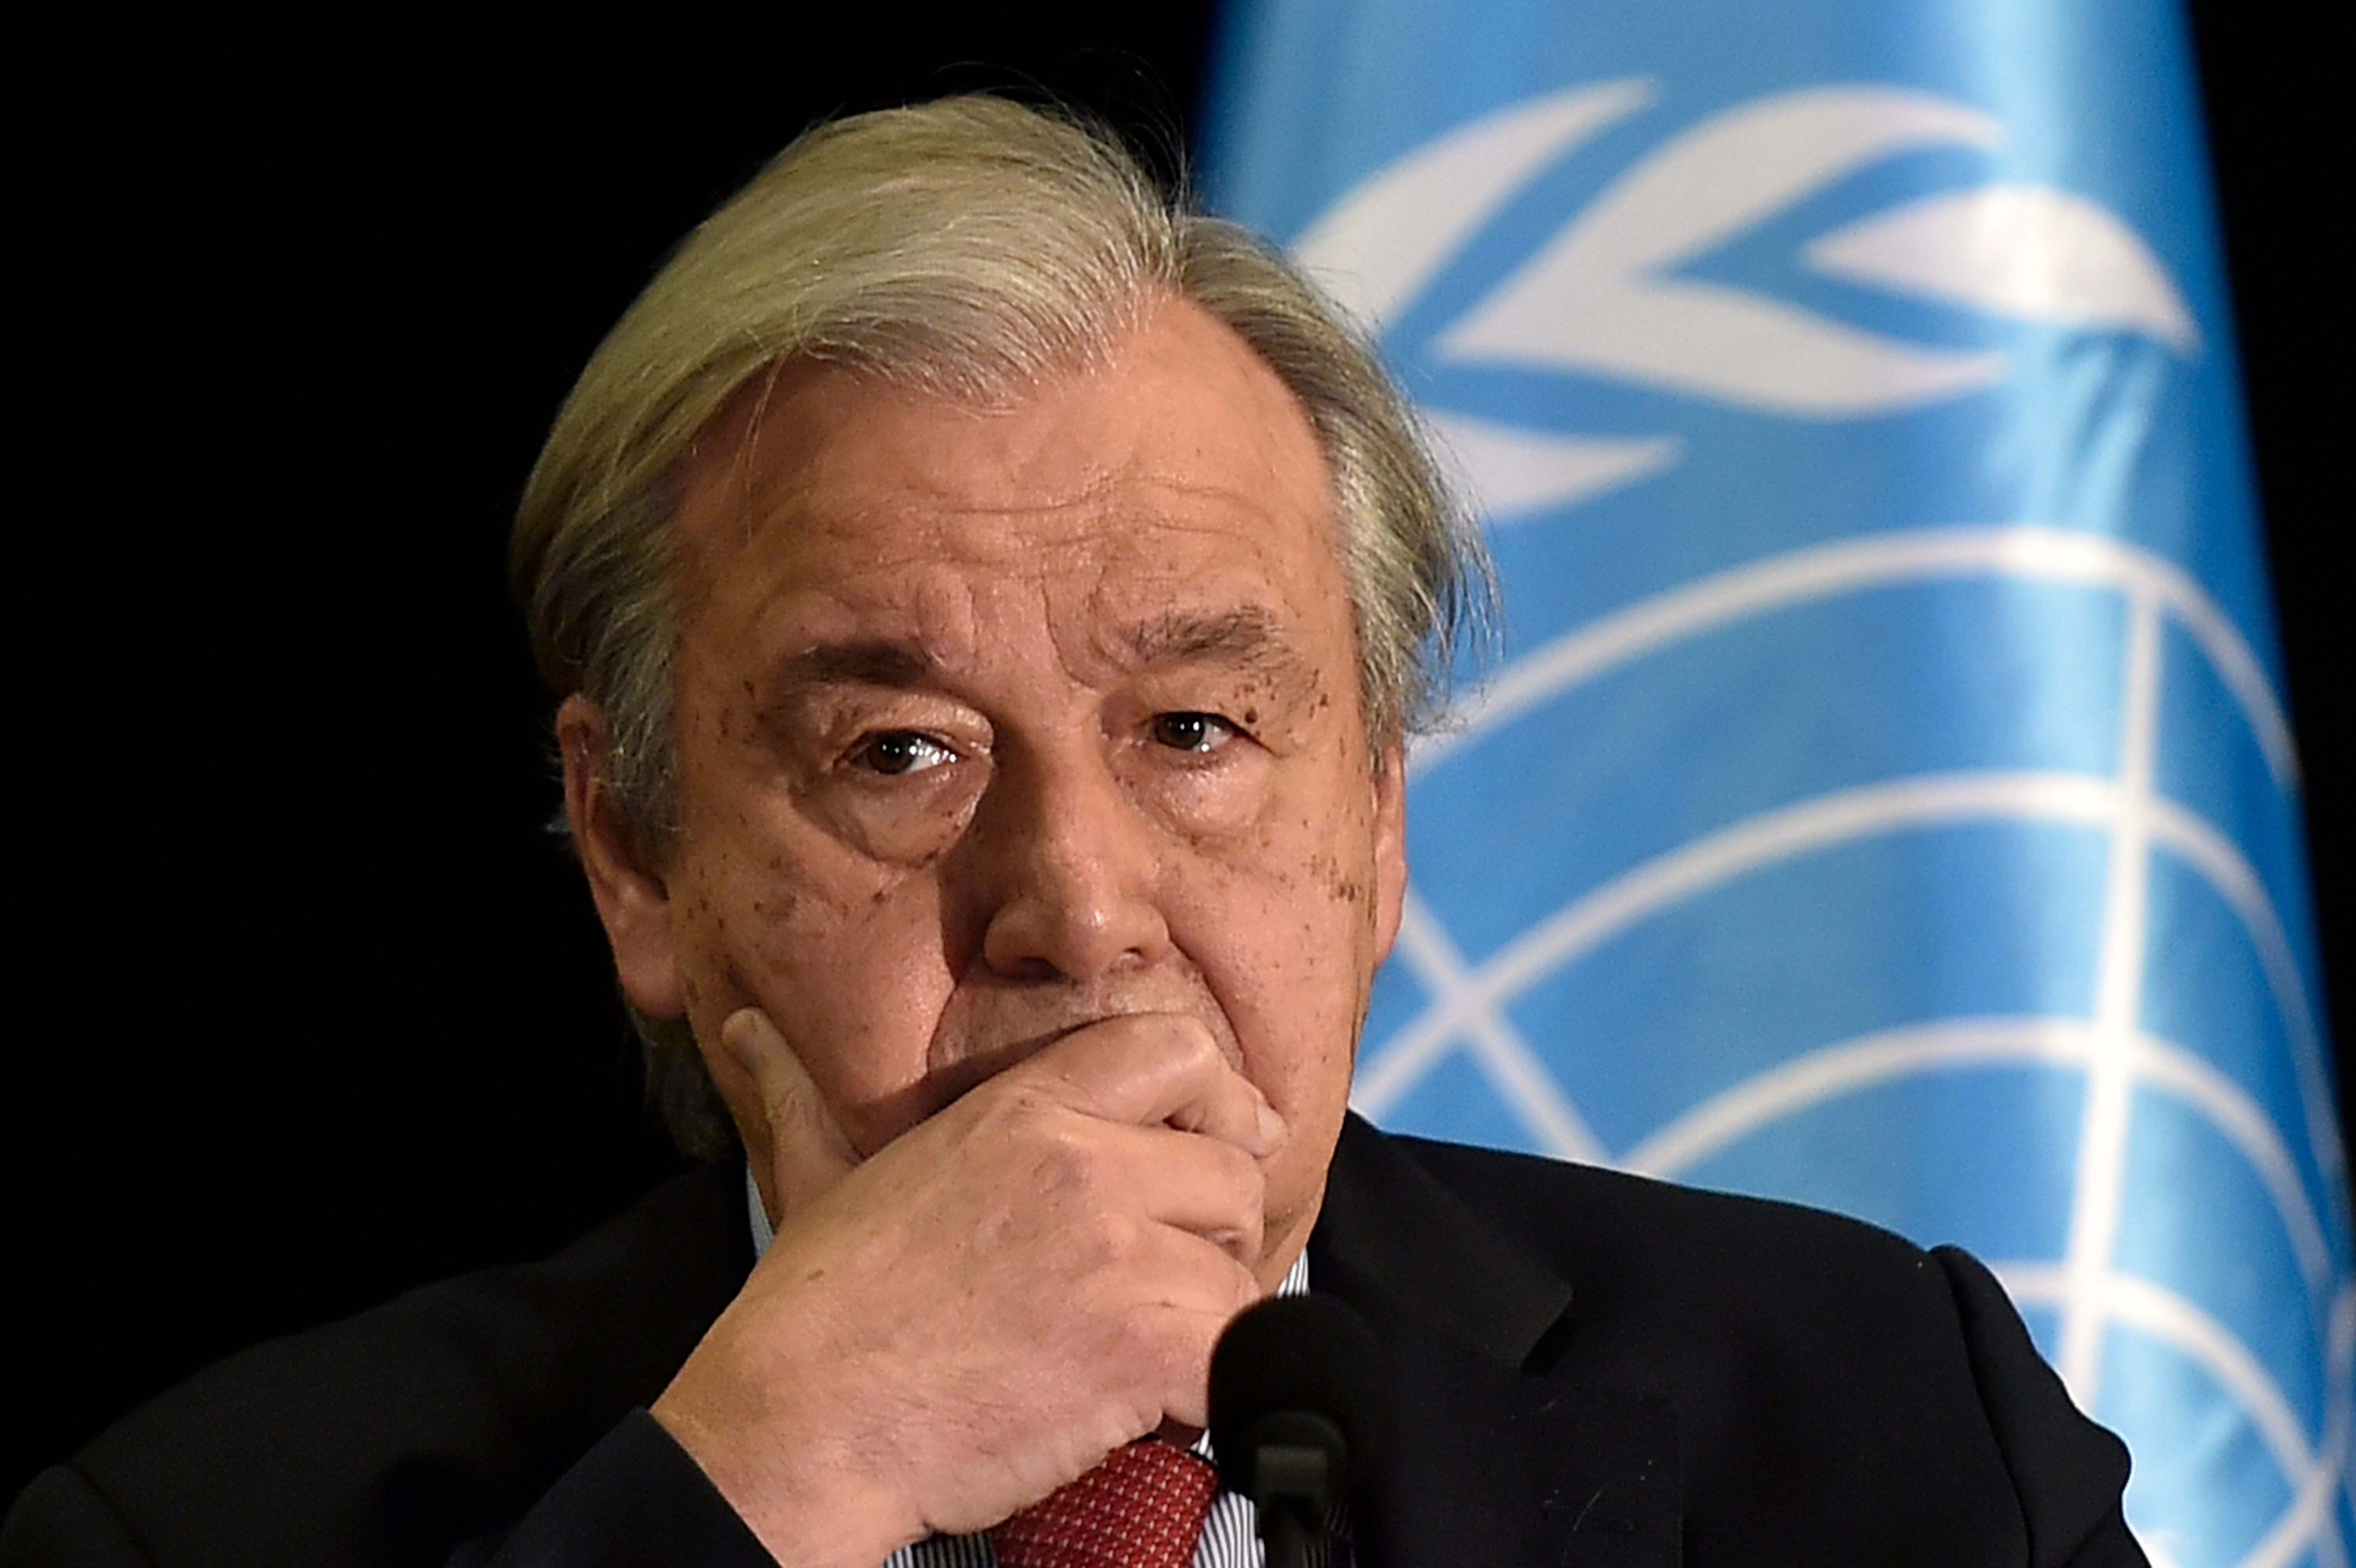 La ONU ve imposible una tregua humanitaria en Ucrania… “por ahora”